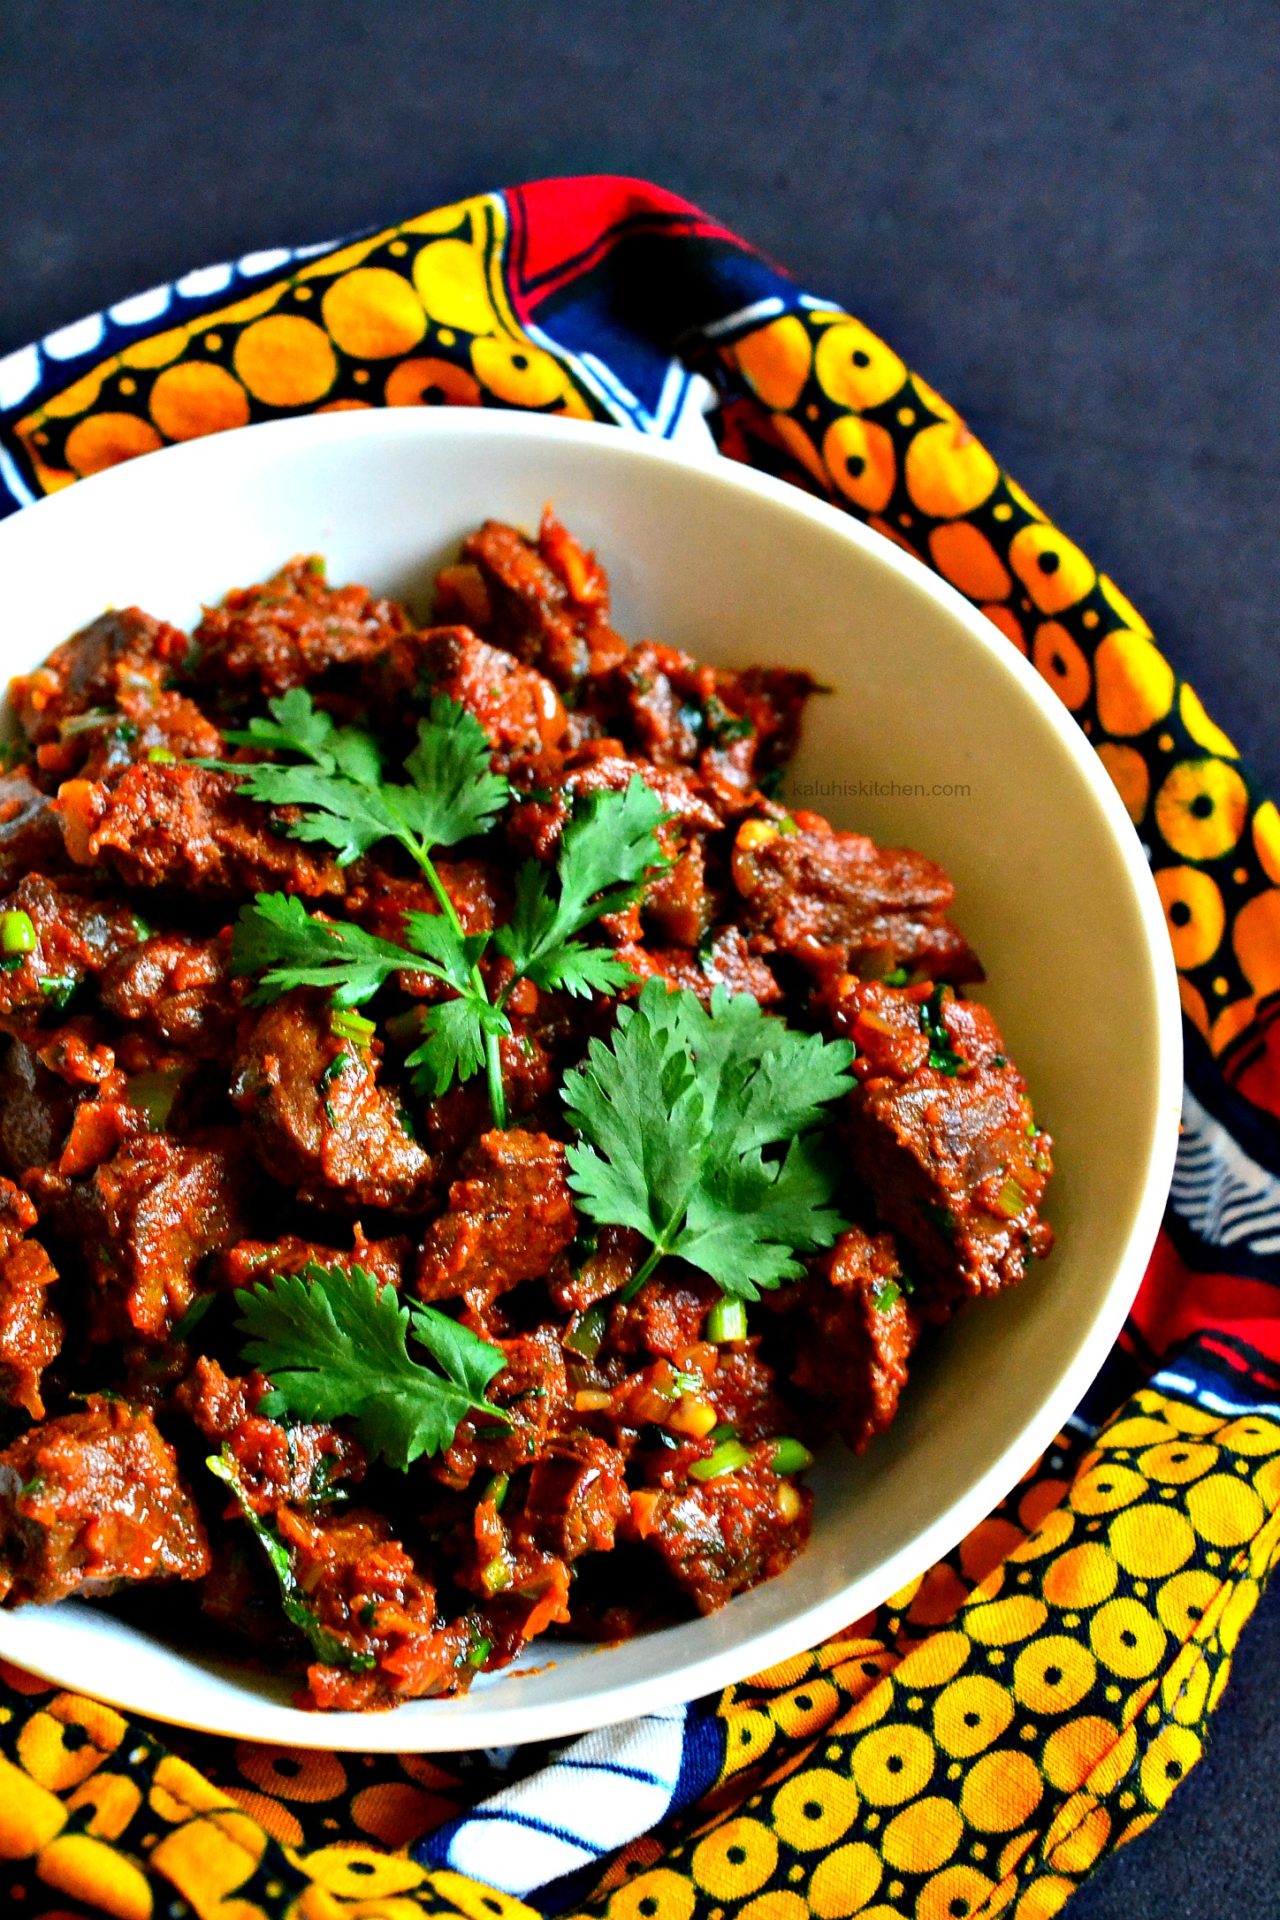 liver recipes_how to cook liver_best kenyan food blogs_food blogs in Kenya_best liver recipes_kaluhiskitchen.com